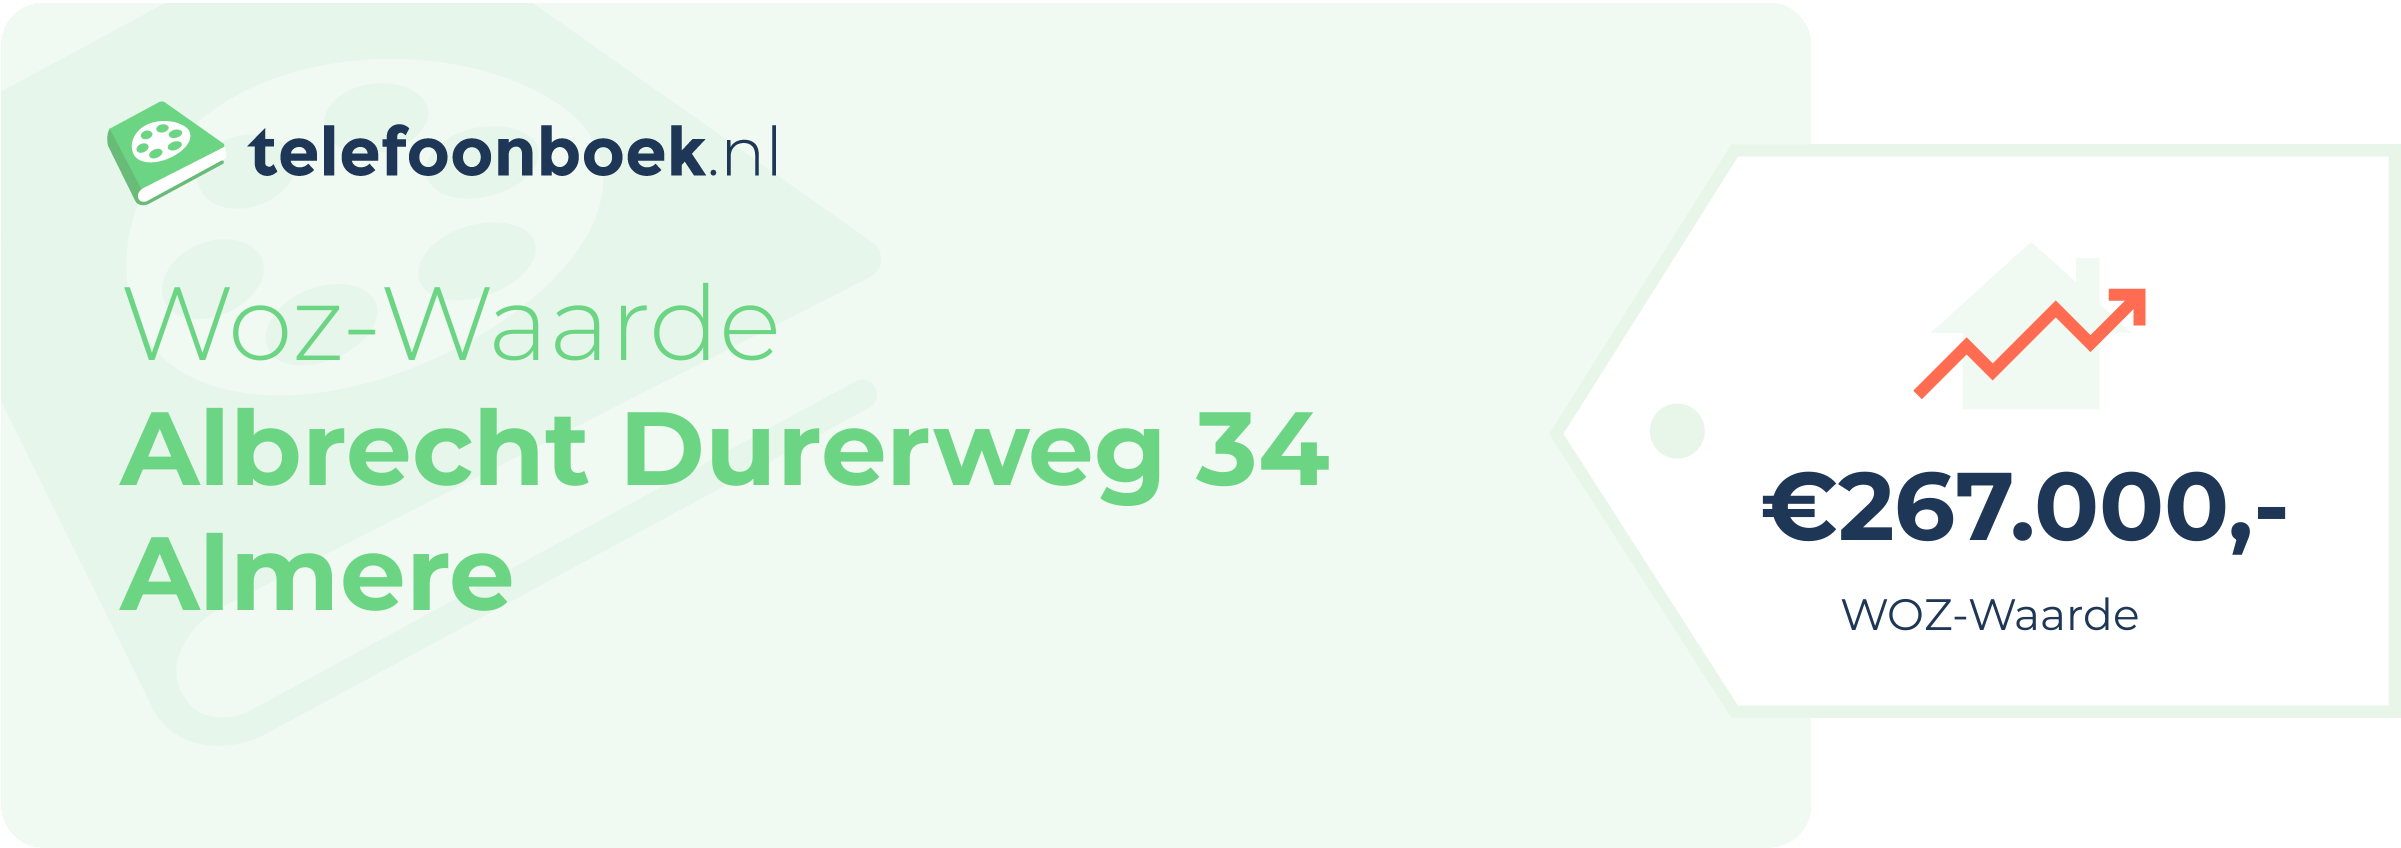 WOZ-waarde Albrecht Durerweg 34 Almere